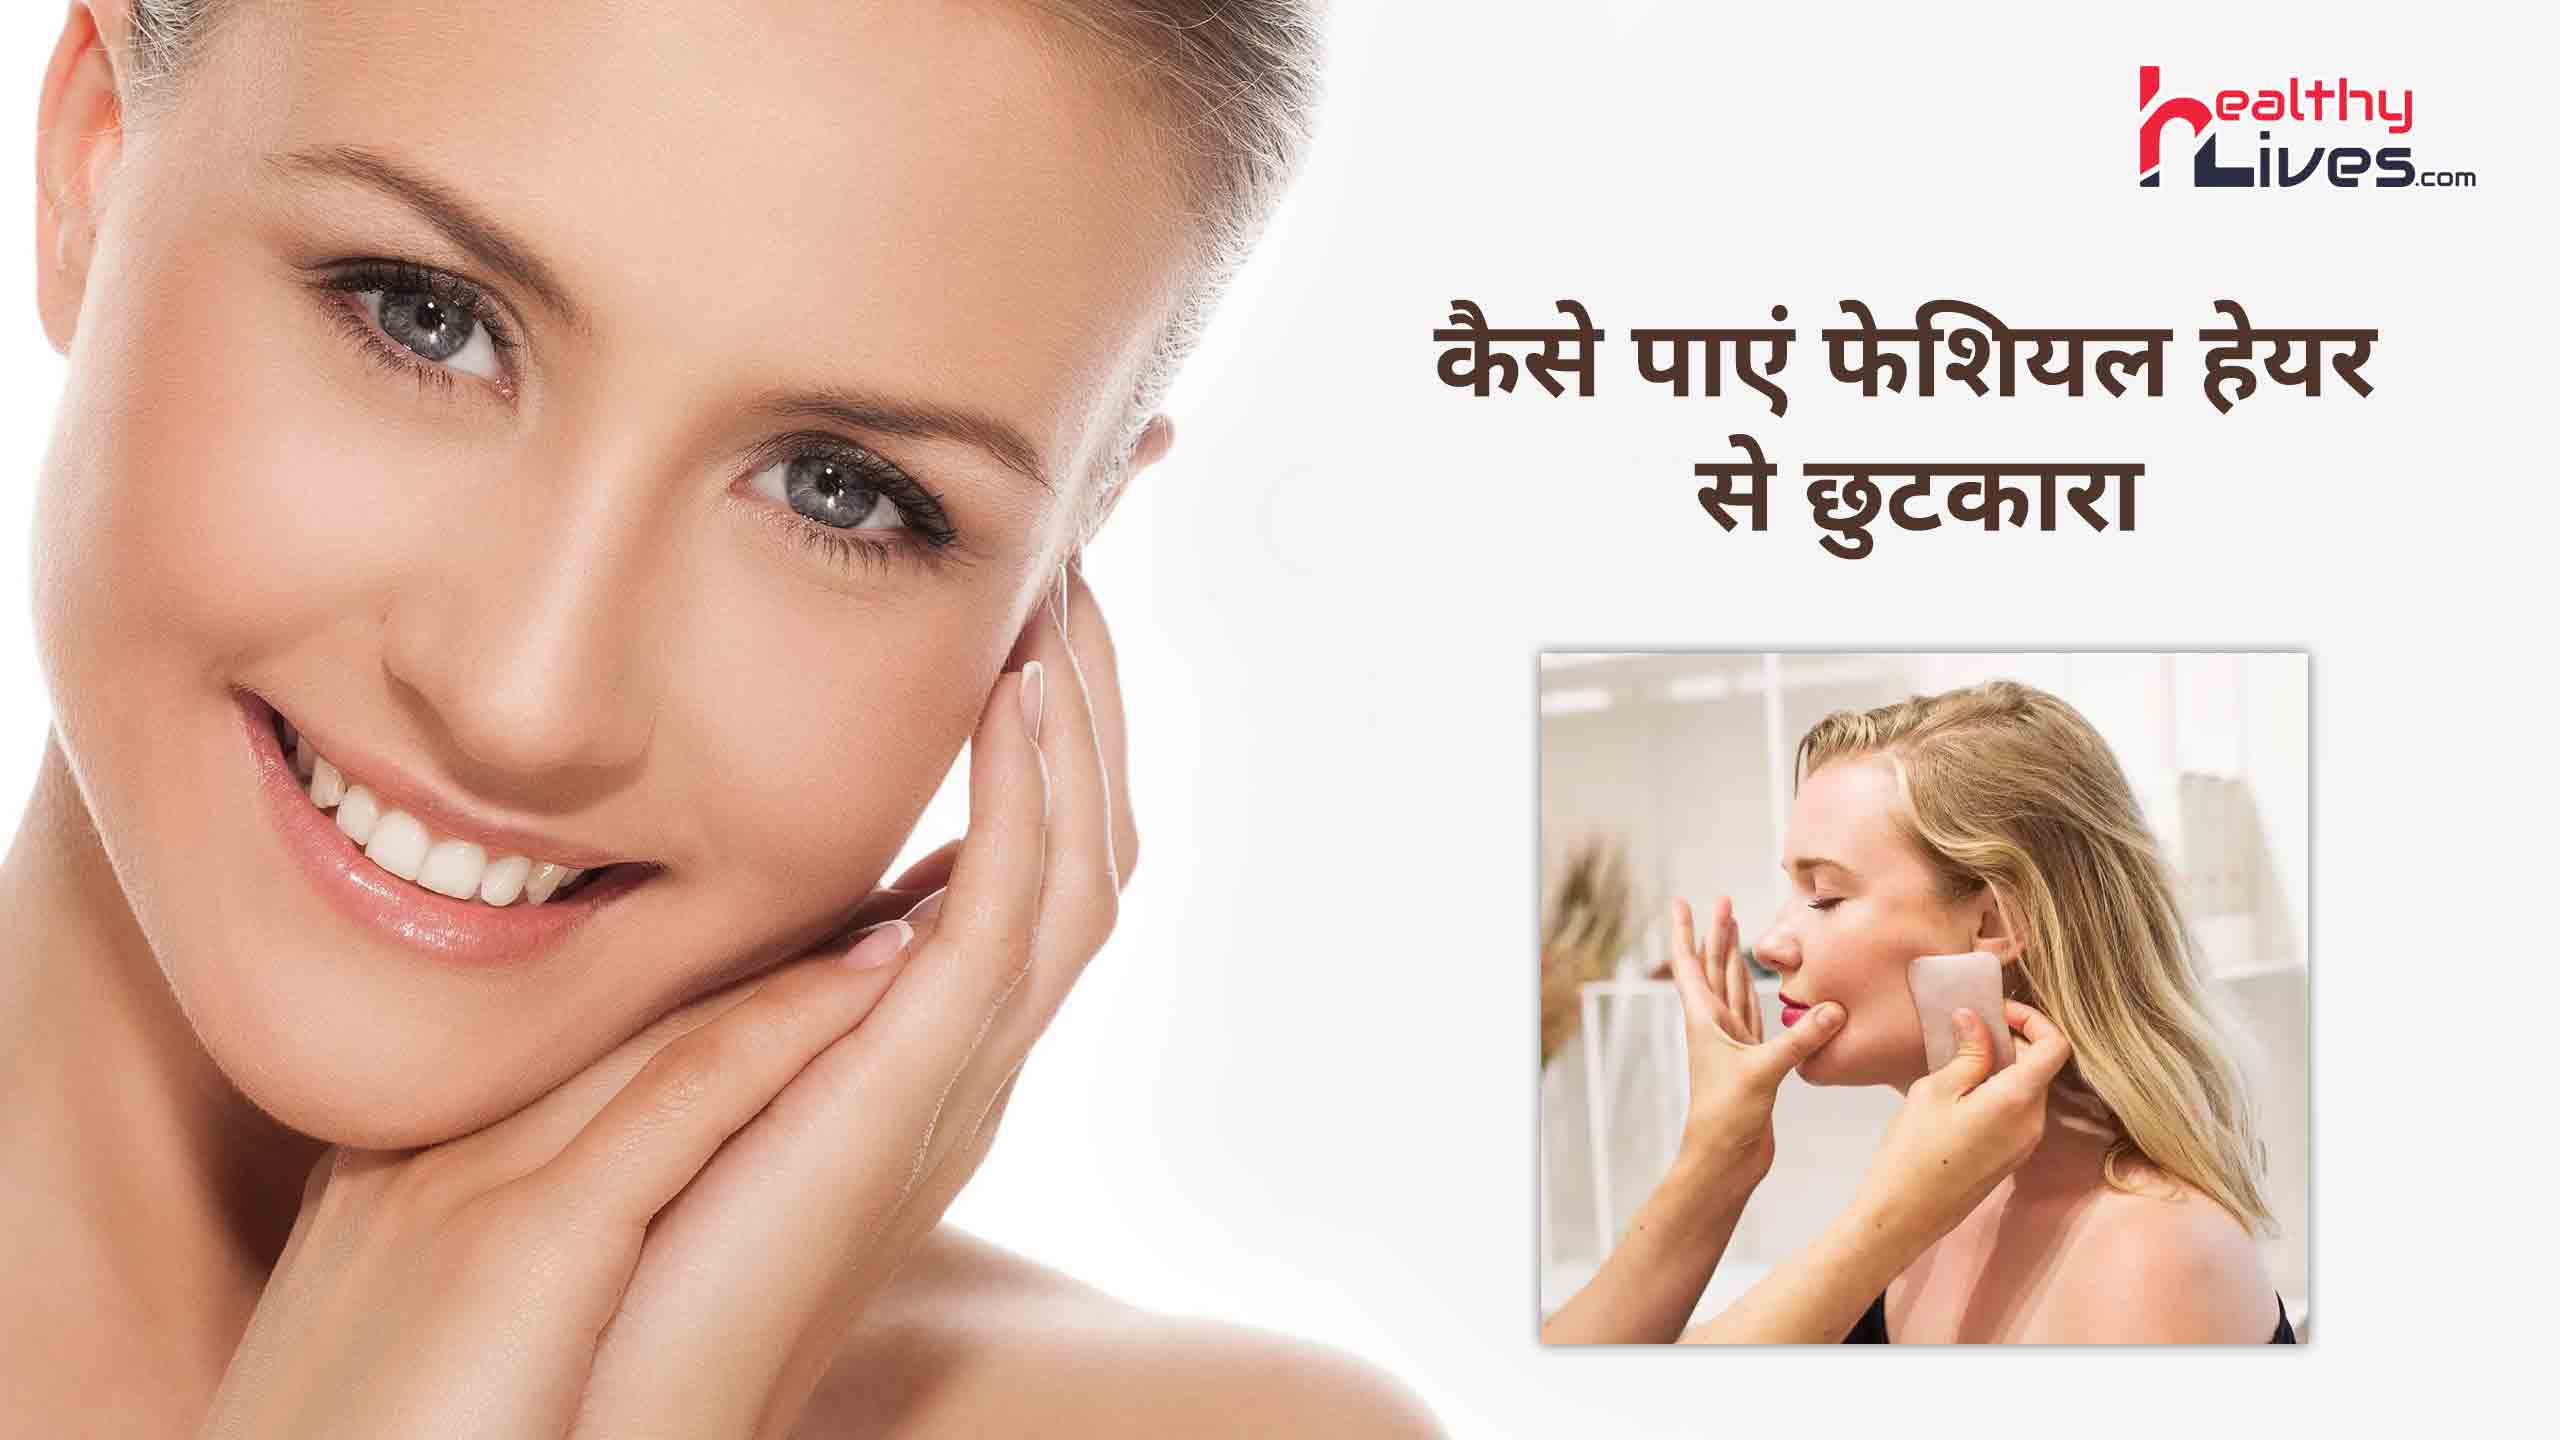 Face Hair Removal Tips in Hindi: चेहरे पर आने वाले अनचाहे बालों से पाएं छुटकारा